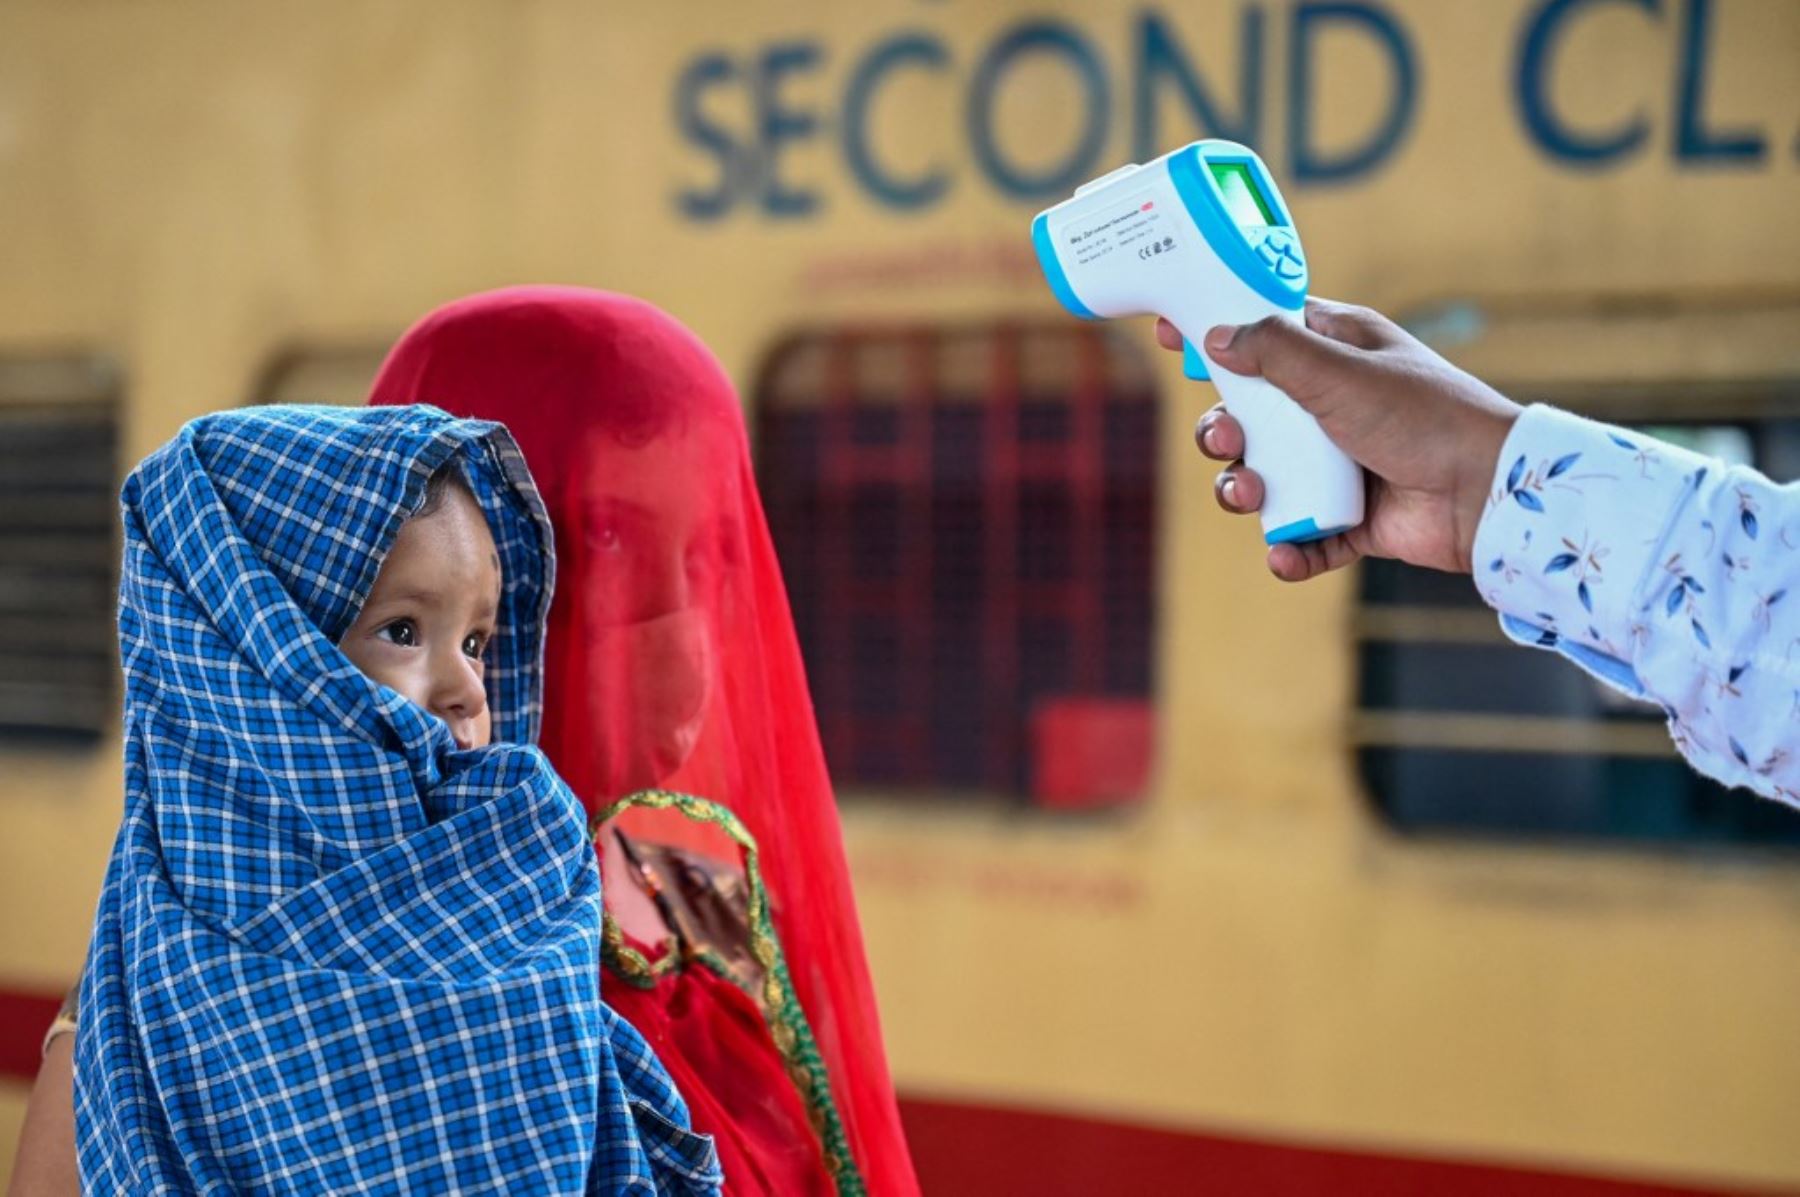 Un trabajador de la salud controla la temperatura corporal de un pasajero durante una prueba de detección del coronavirus Covid-19 cuando llega con su hijo a una plataforma ferroviaria en un tren de larga distancia, en Mumbai el 8 de junio de 2021. Foto: AFP